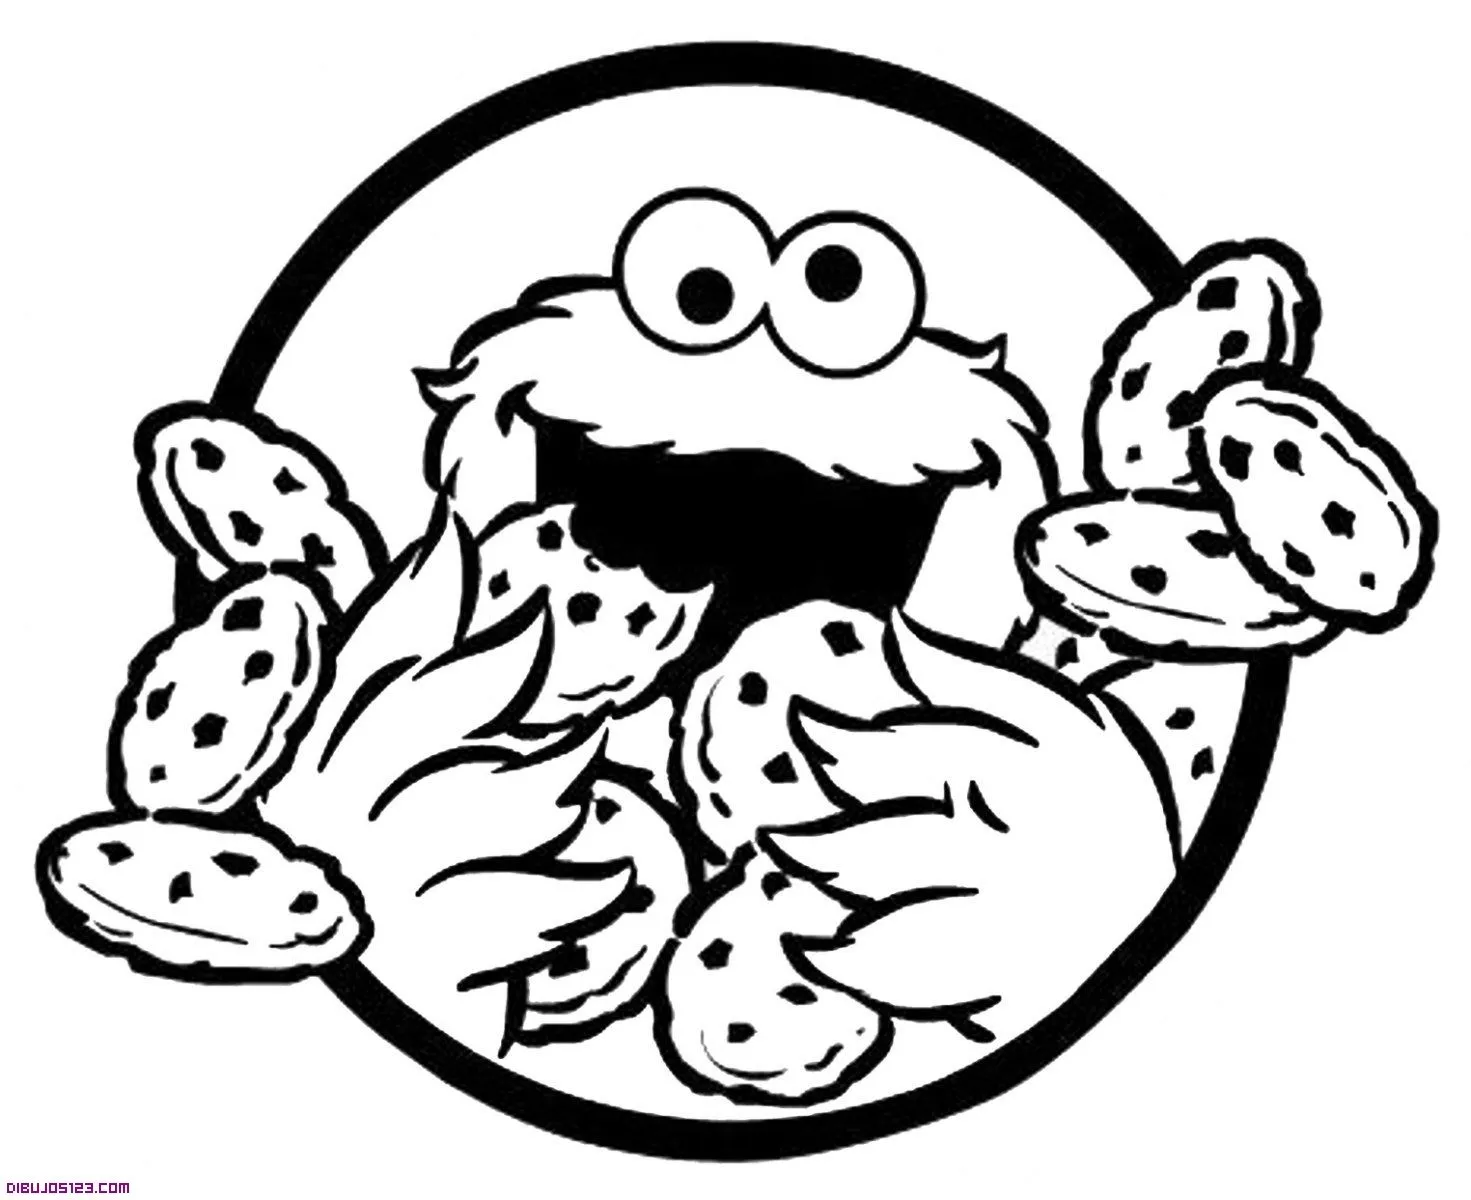 Dibujo del monstruo come galletas - Imagui